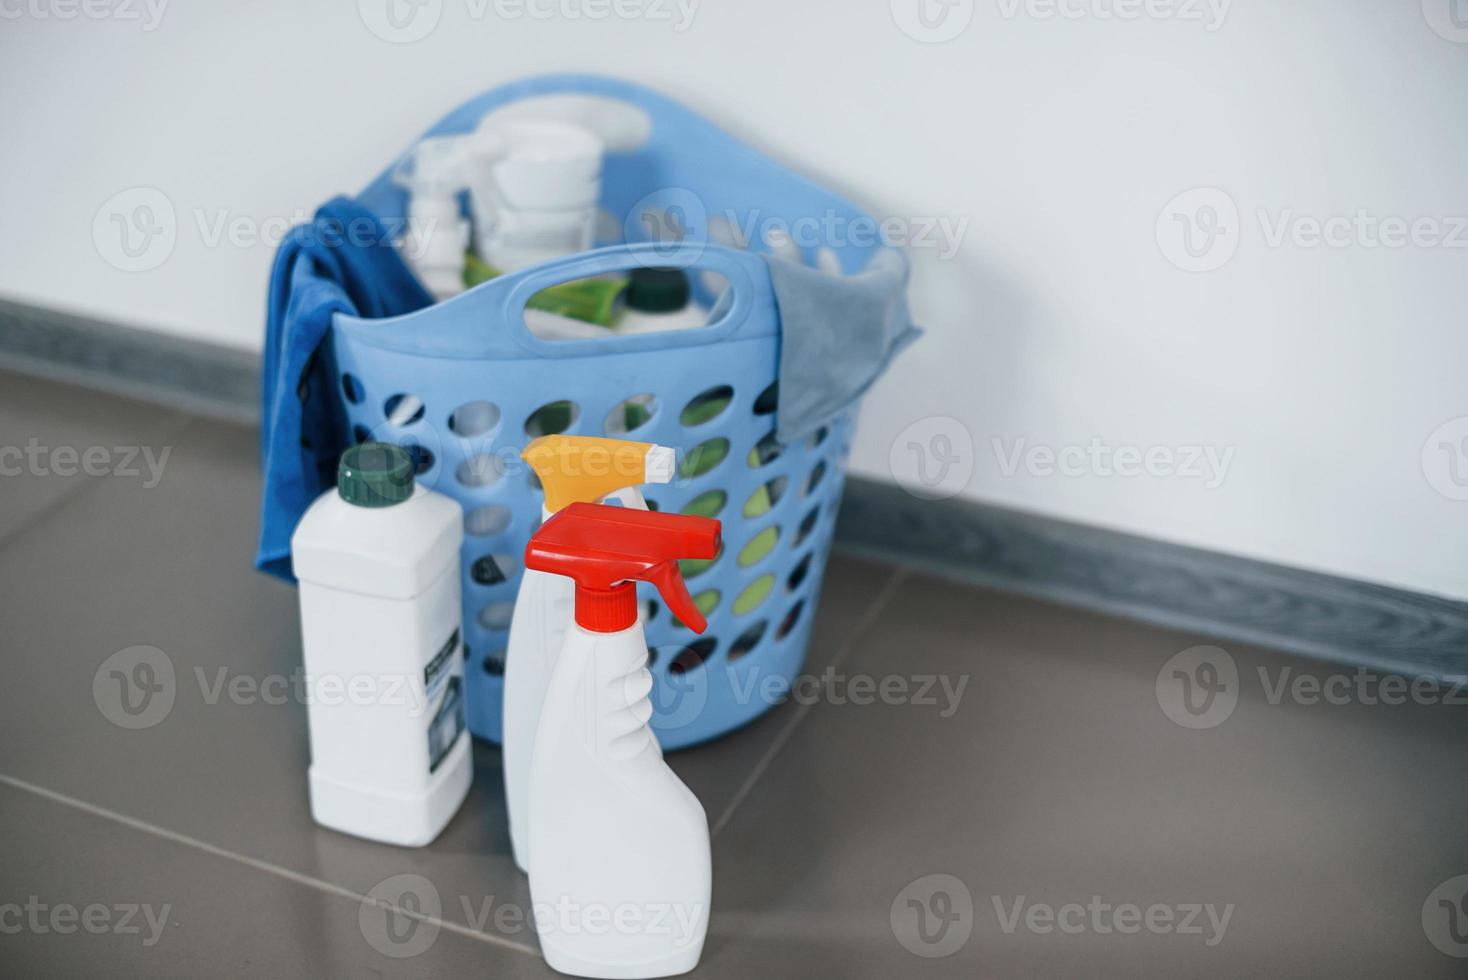 vista de cerca de botellas con detergente y cesta en el interior del suelo foto